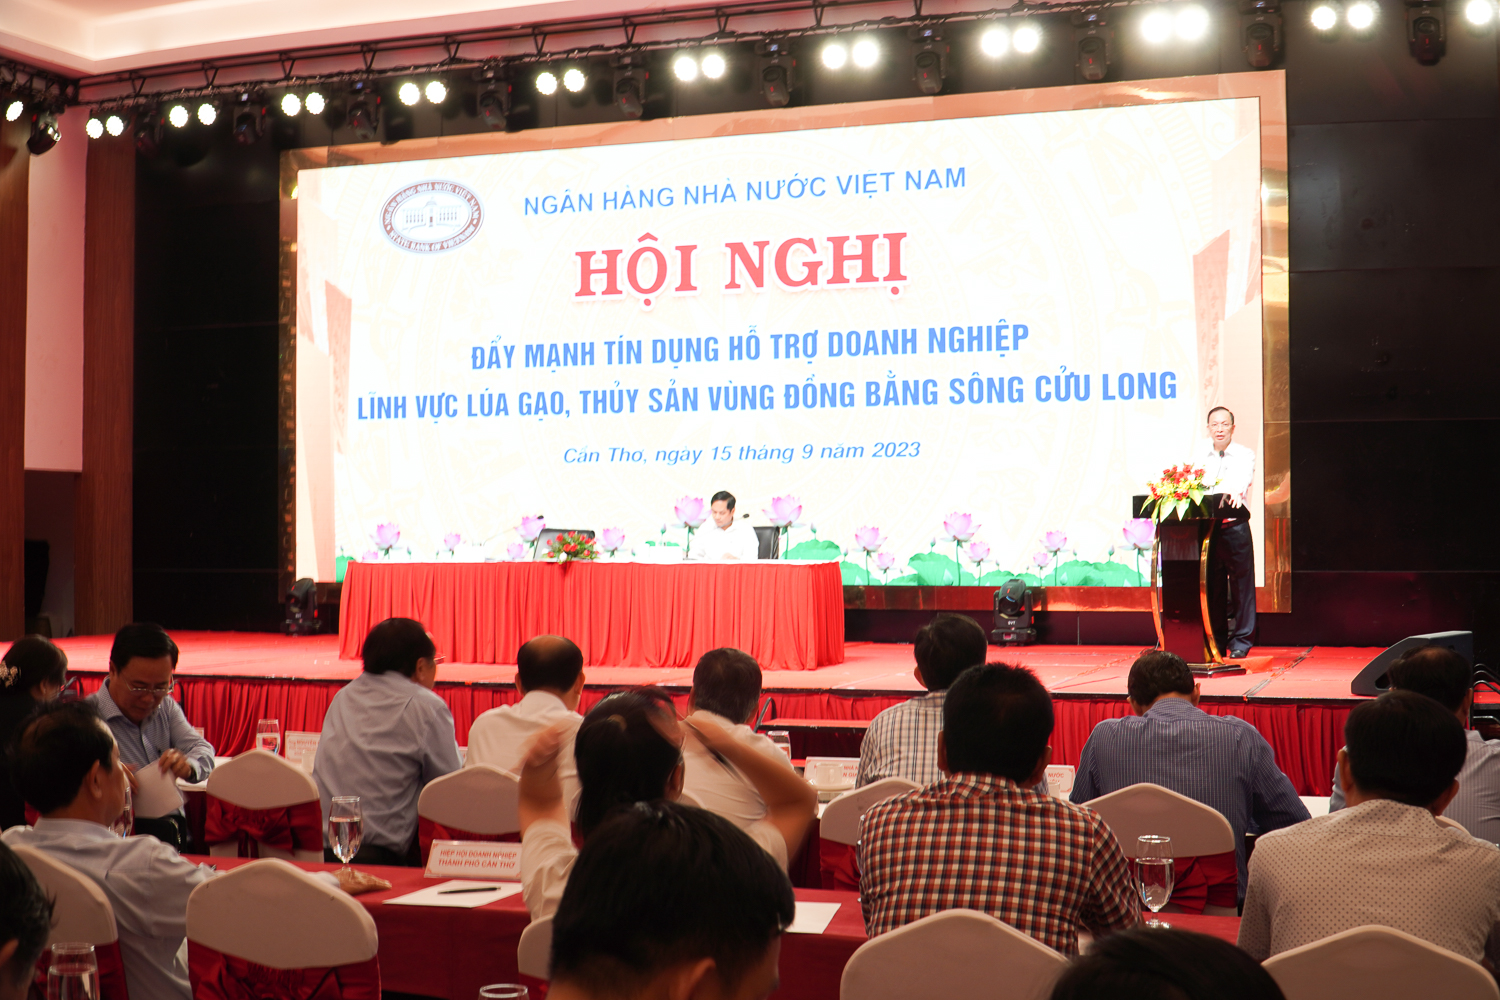 Hội nghị đẩy mạnh tín dụng hỗ trợ doanh nghiệp lĩnh vực lúa gạo, thủy sản vùng ĐBSCL do Ngân hàng Nhà nước Việt Nam phối hợp với UBND TP Cần Thơ tổ chức. Ảnh: Kim Anh.